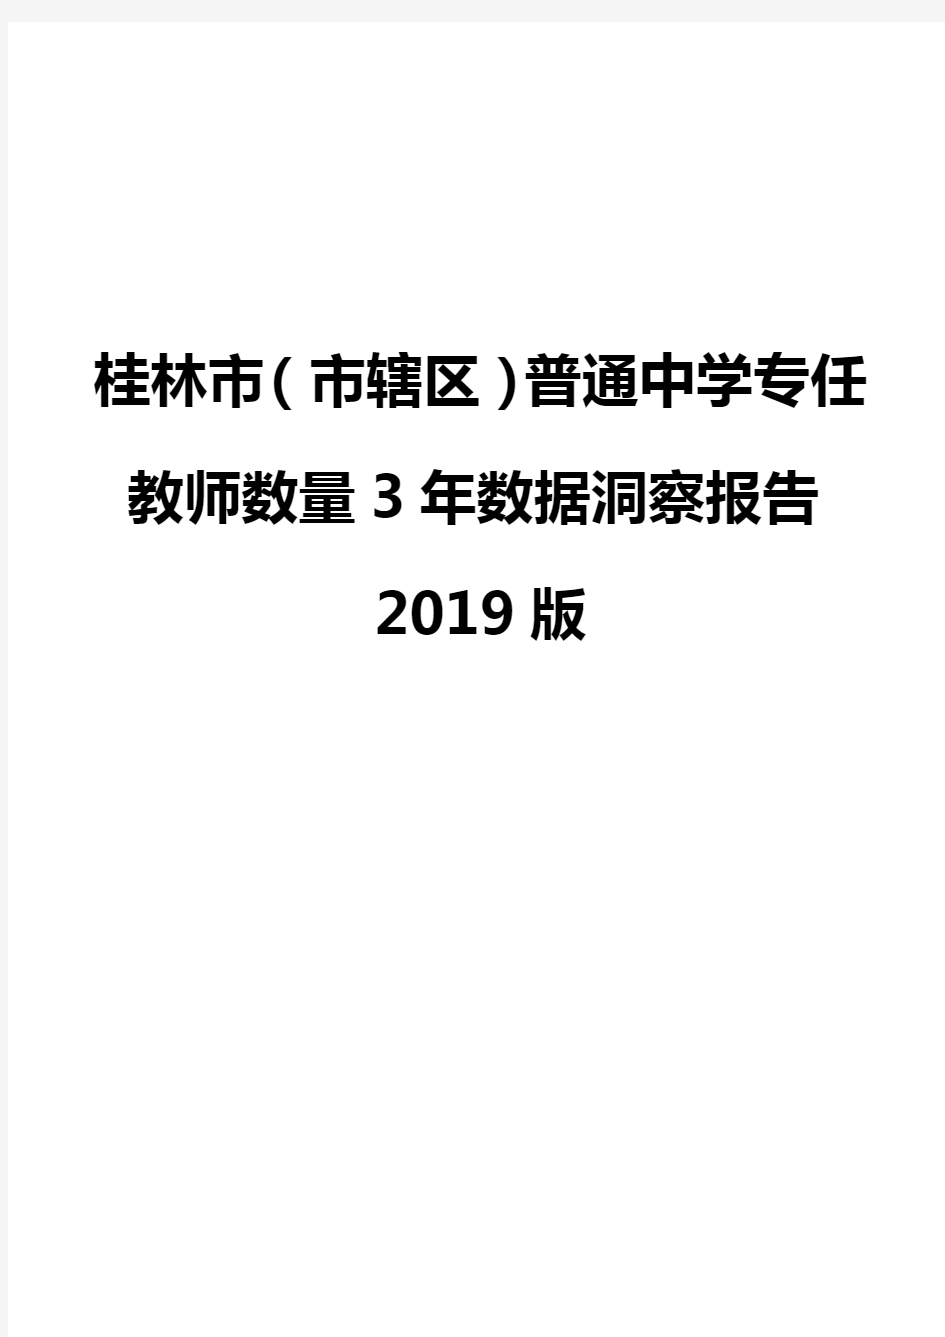 桂林市(市辖区)普通中学专任教师数量3年数据洞察报告2019版